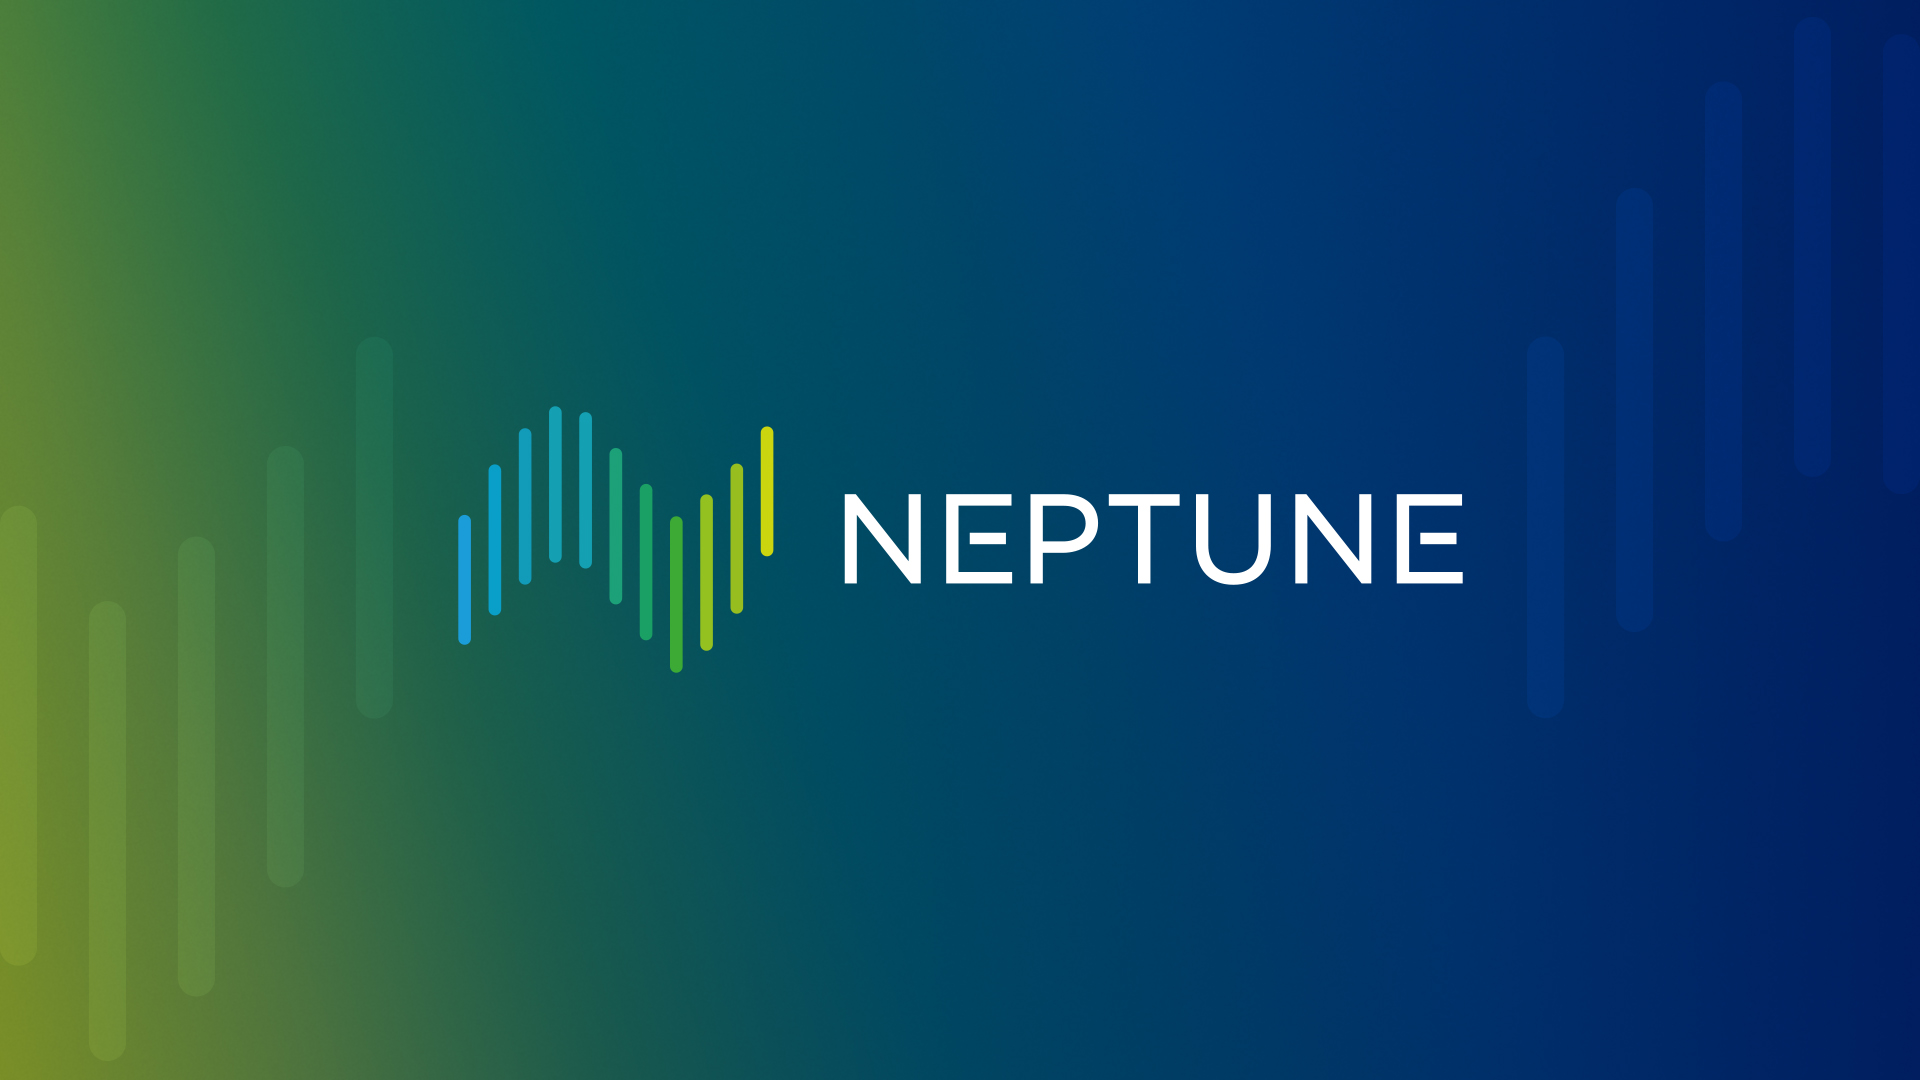 Neptune - Bunker Info tab updates